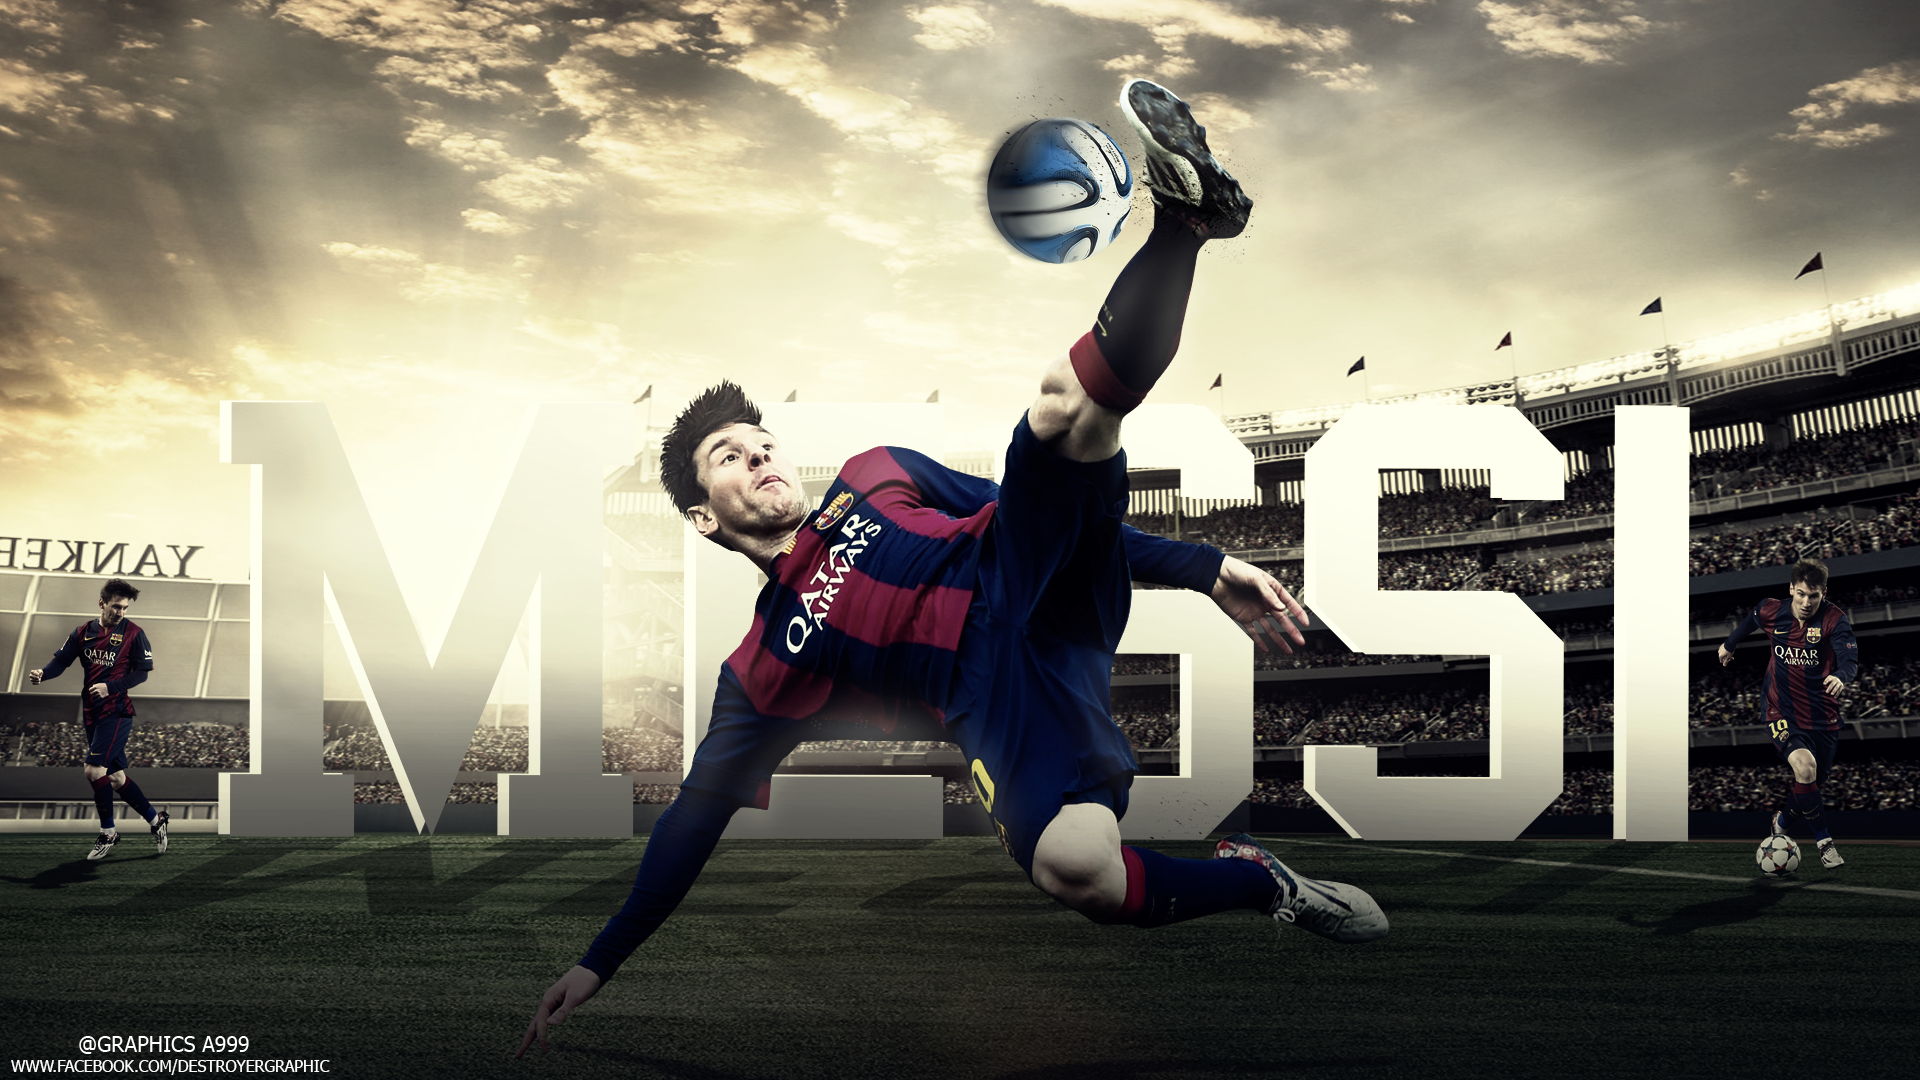 Hãy cập nhật cho điện thoại của bạn với hình nền Lionel Messi 2014-15 để kỷ niệm một trong những mùa giải đỉnh cao nhất của anh ấy. Hình ảnh sẽ giúp bạn đem lại niềm tự hào và định vị mình là một fan cứng của Messi.